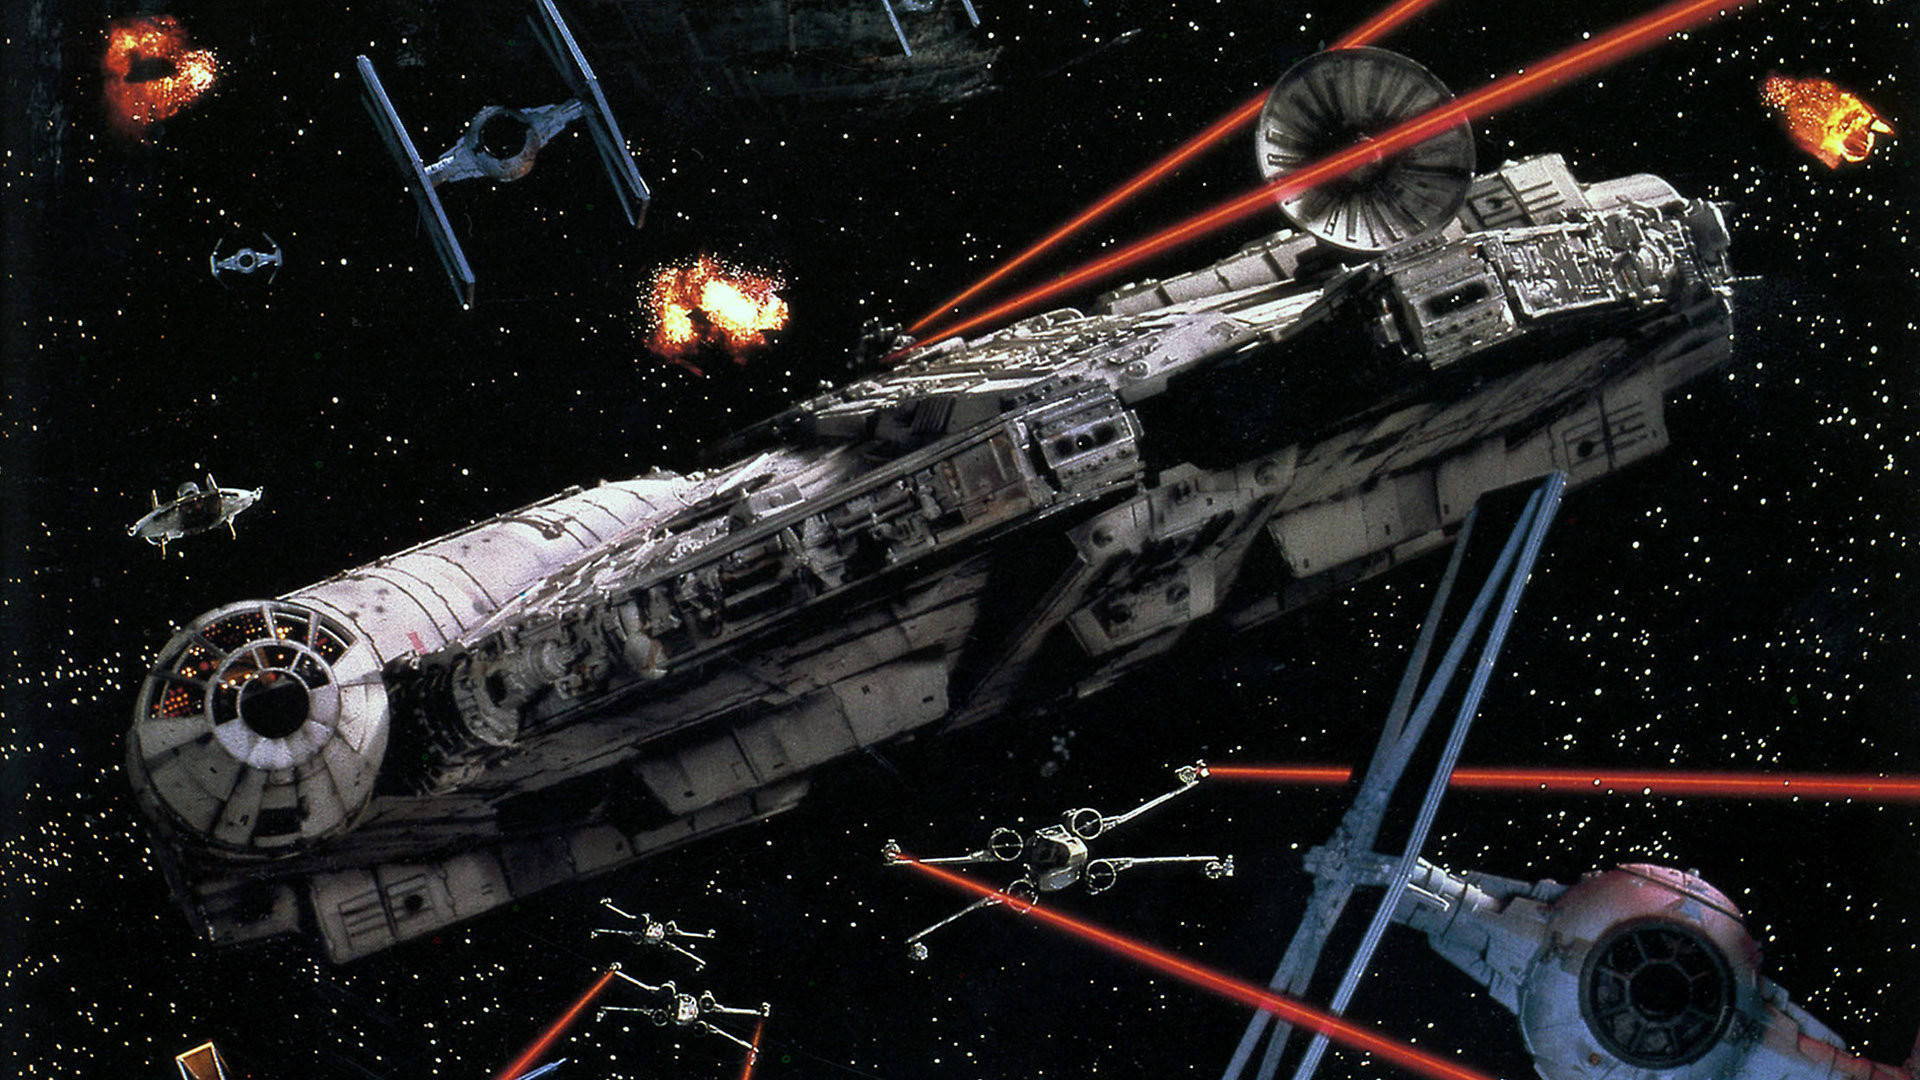 Epic Star Wars Film Millennium Falcon Background